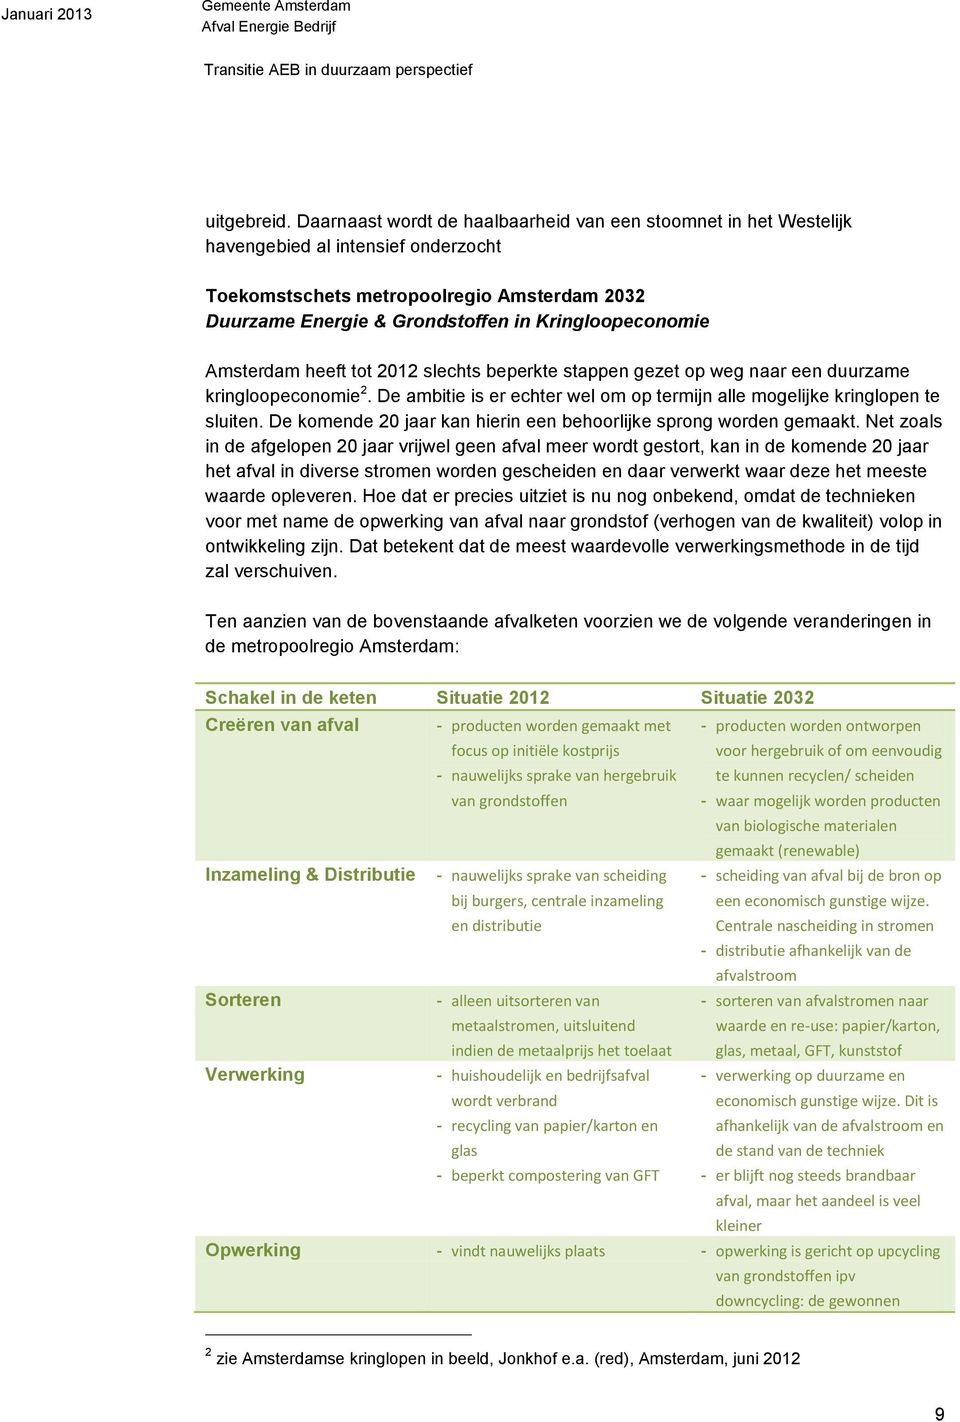 Amsterdam heeft tot 2012 slechts beperkte stappen gezet op weg naar een duurzame kringloopeconomie 2. De ambitie is er echter wel om op termijn alle mogelijke kringlopen te sluiten.